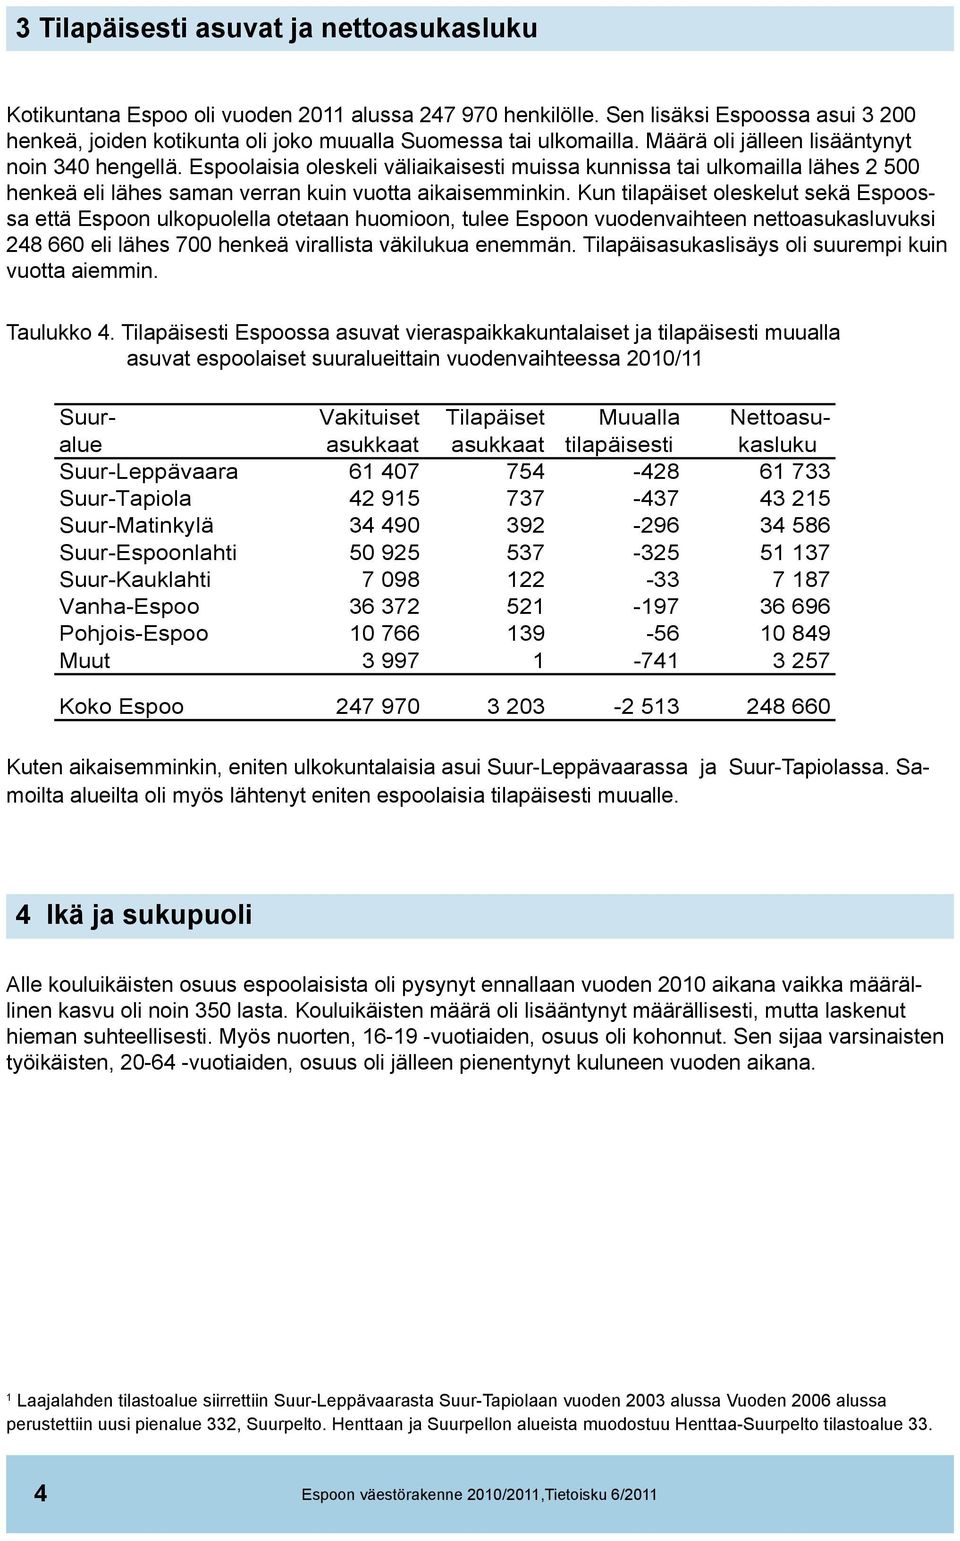 Kun tilapäiset oleskelut sekä Espoossa että Espoon ulkopuolella otetaan huomioon, tulee Espoon vuodenvaihteen nettoasukasluvuksi 248 660 eli lähes 700 henkeä virallista väkilukua enemmän.